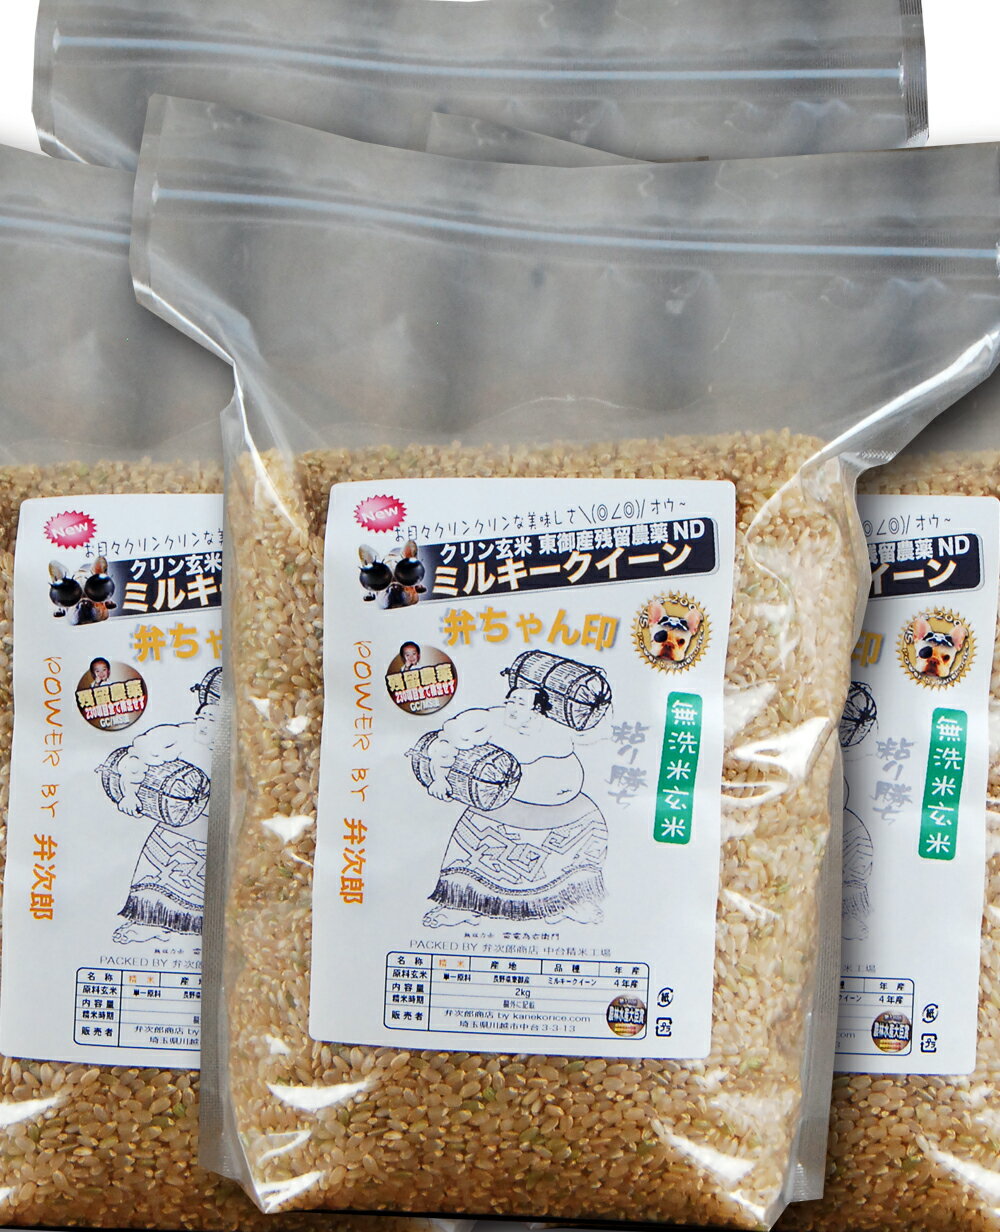 無洗米玄米 クリン玄米 長野東御産 残留農薬ゼロ ミルキークイーン スタンドパック 8kg(2kg×4袋)